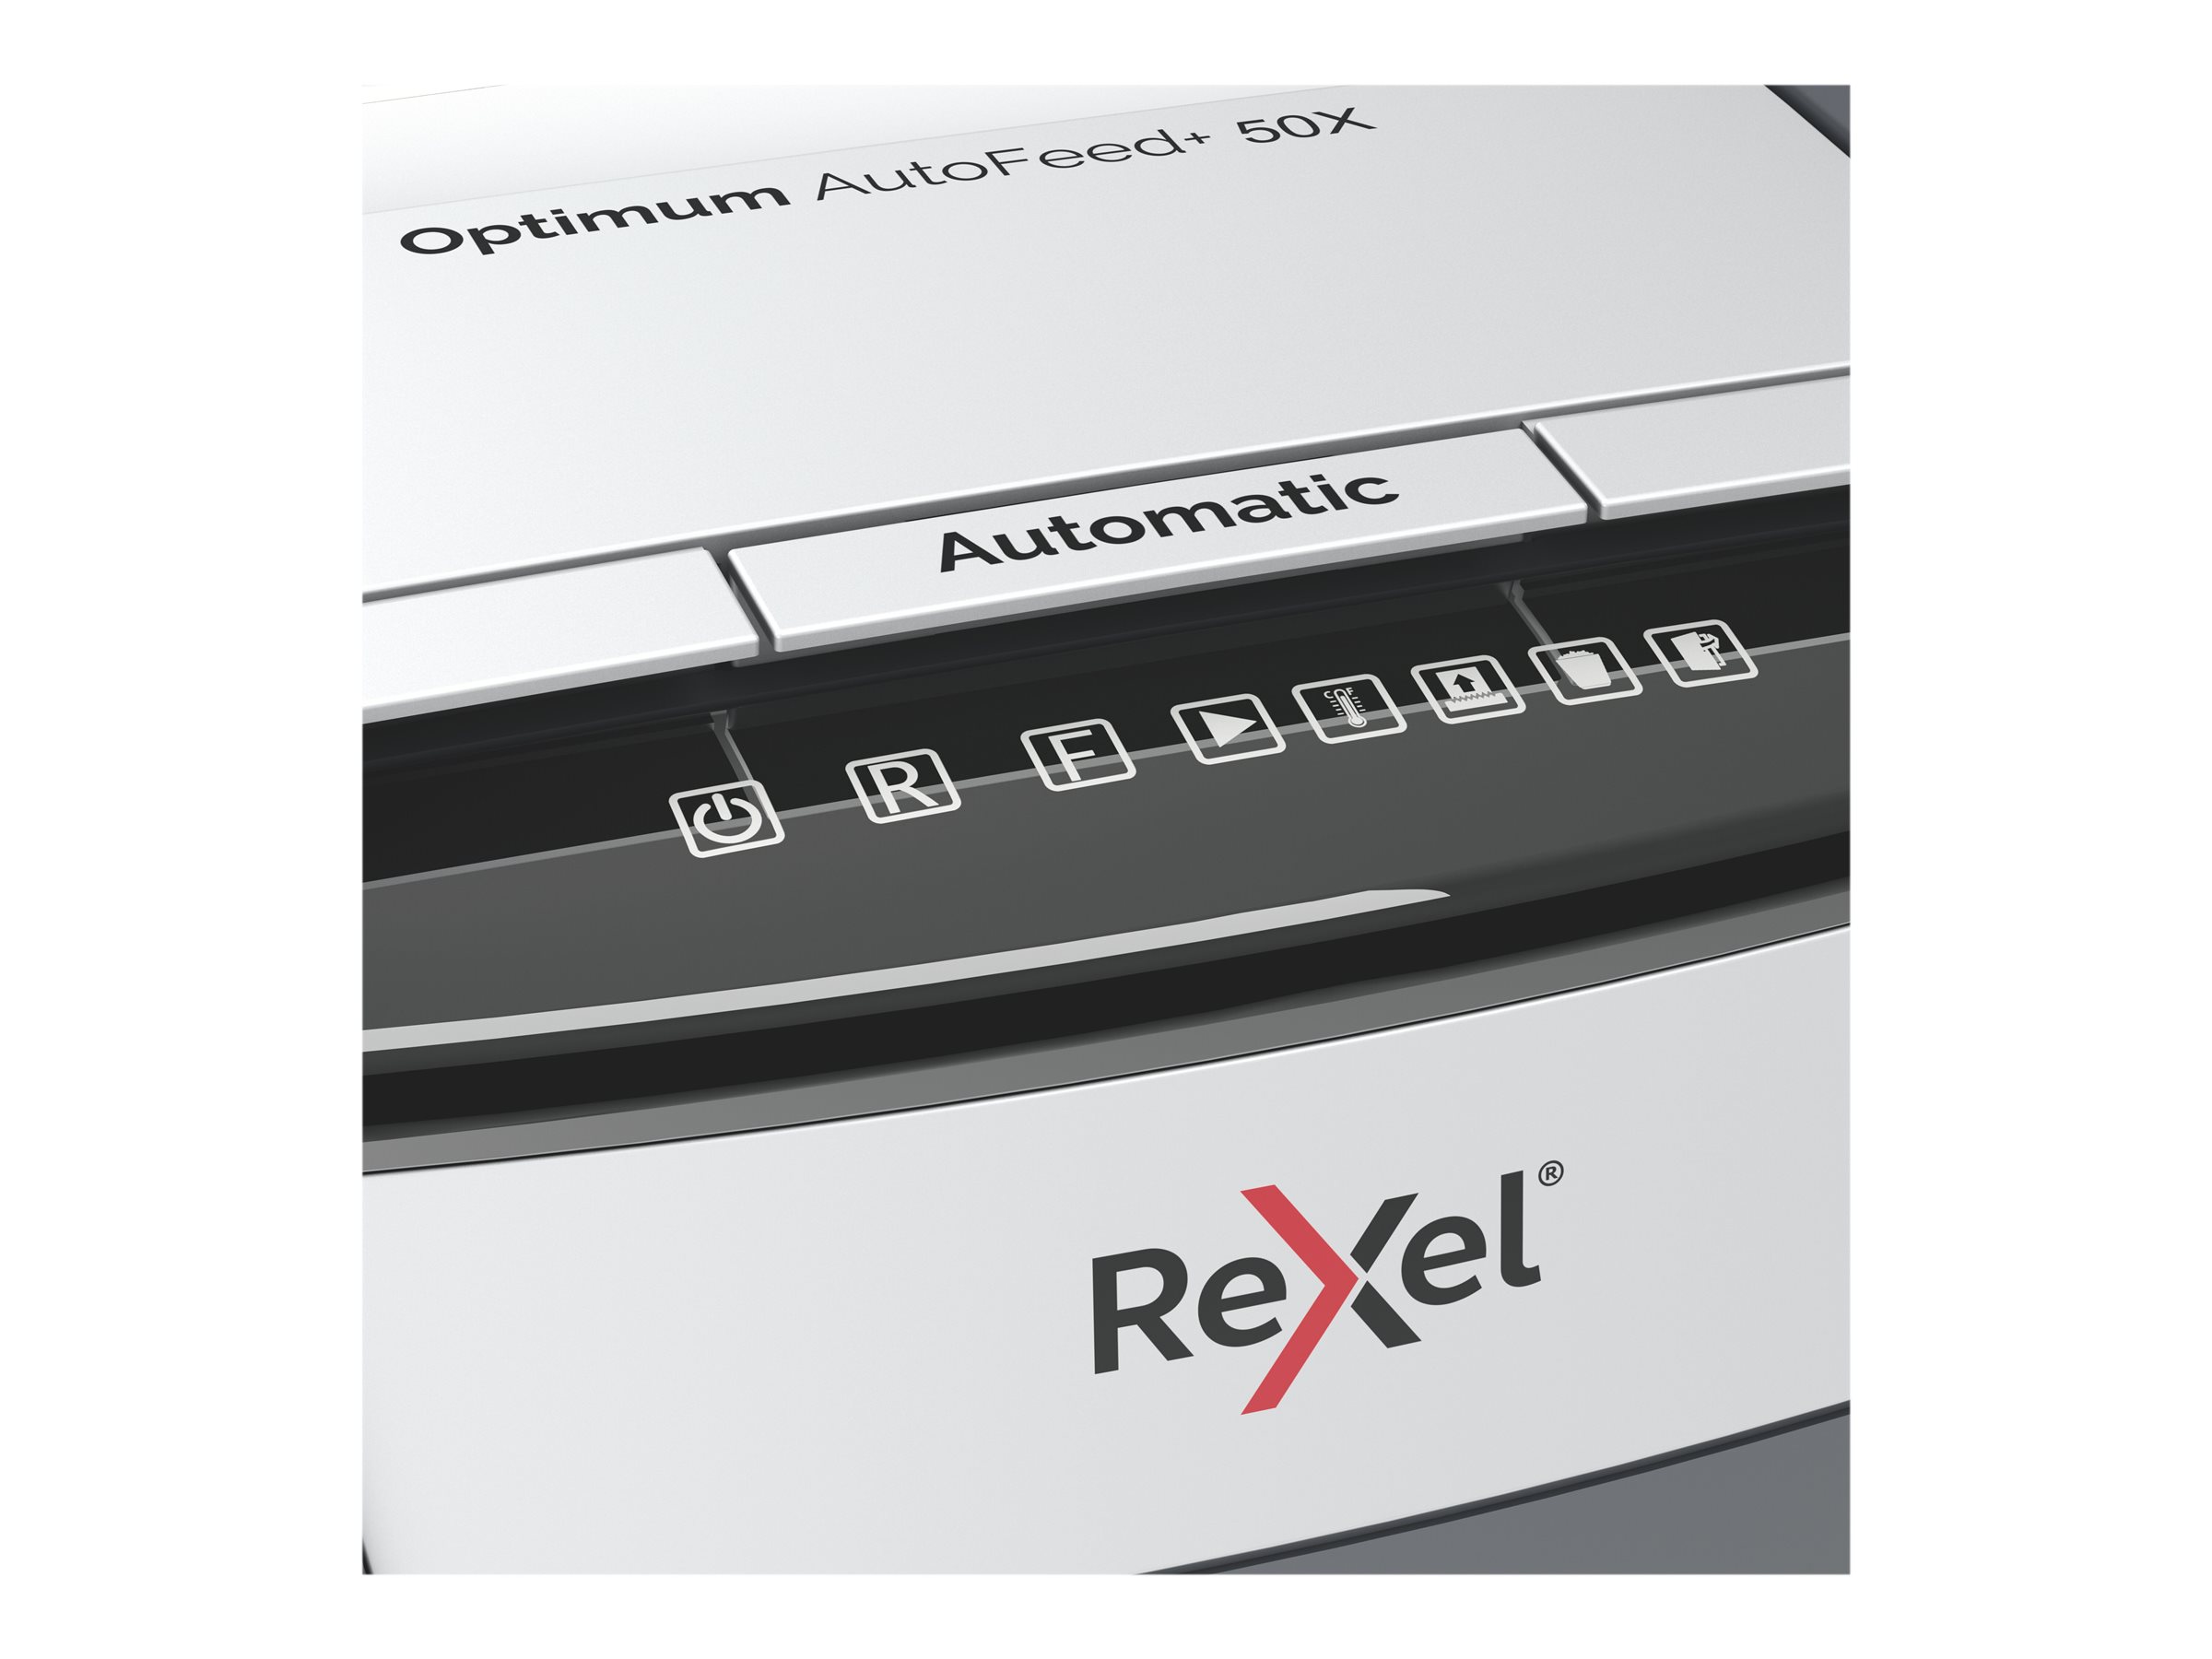 Rexel Optimum AutoFeed+ 50X - Vorzerkleinerer